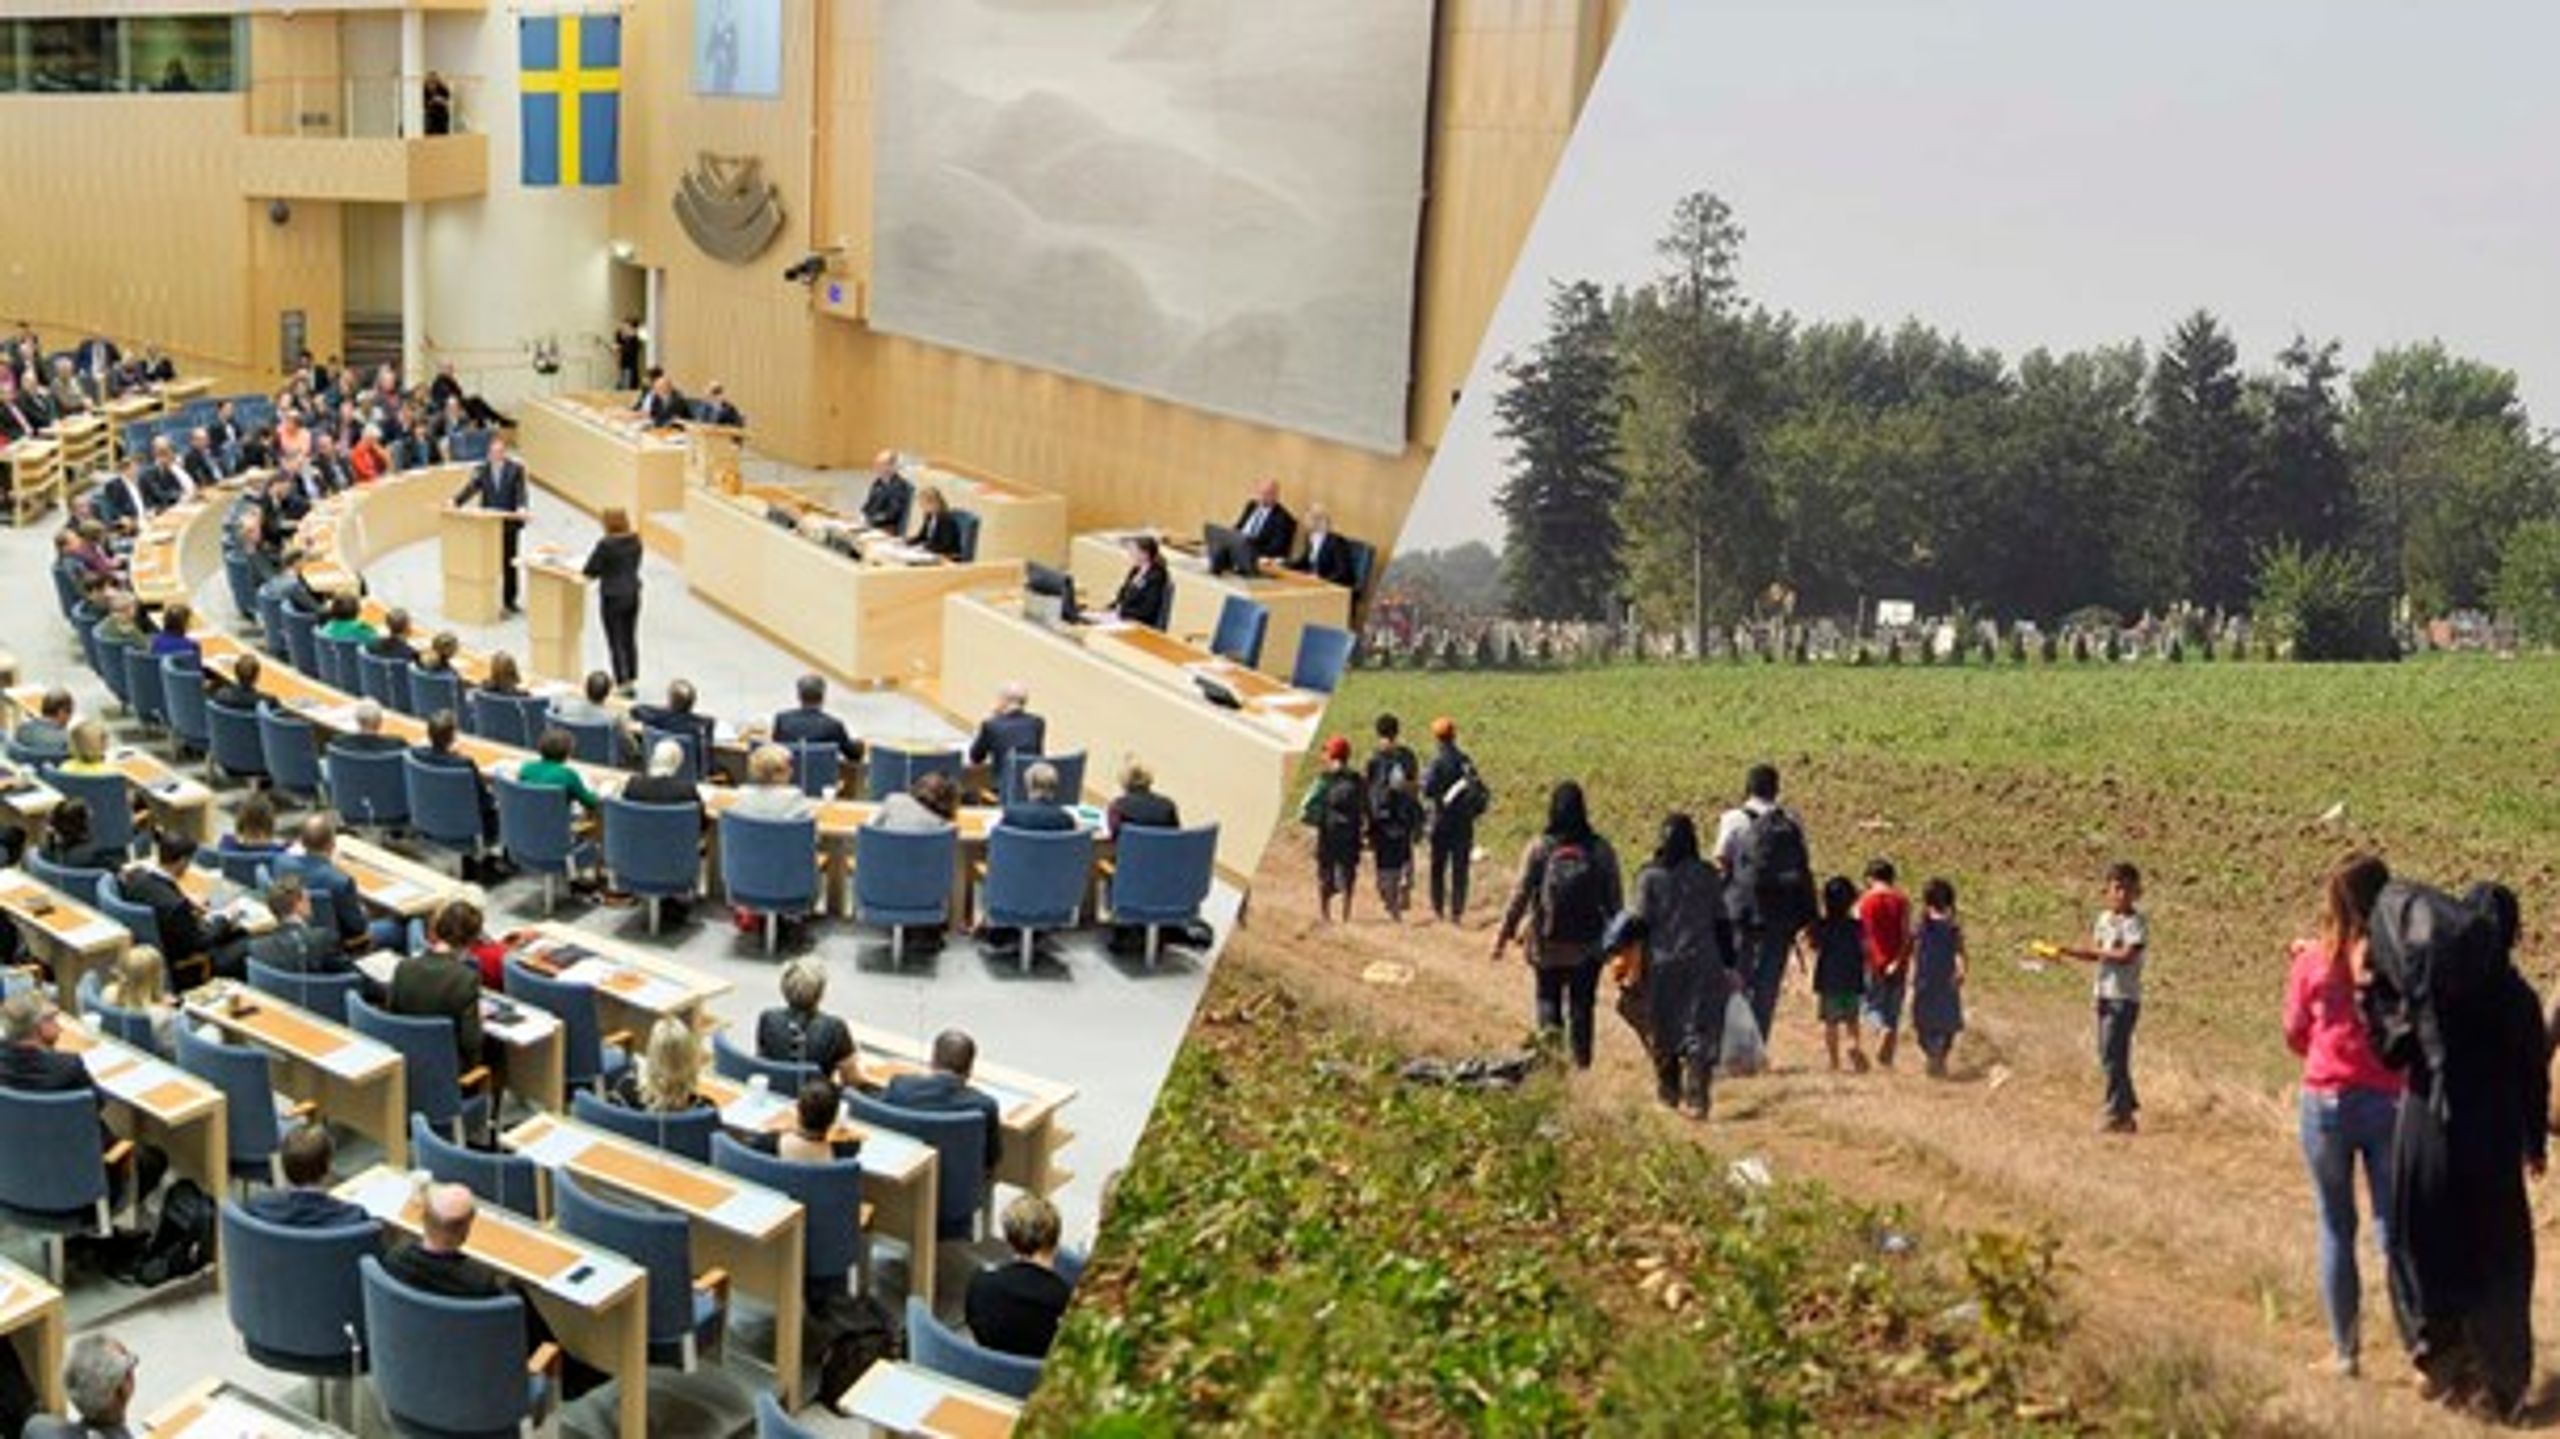 Regeringens förslag innebär att möjligheten att söka asyl i Sverige försvagas, enligt kritiker i riksdagen.